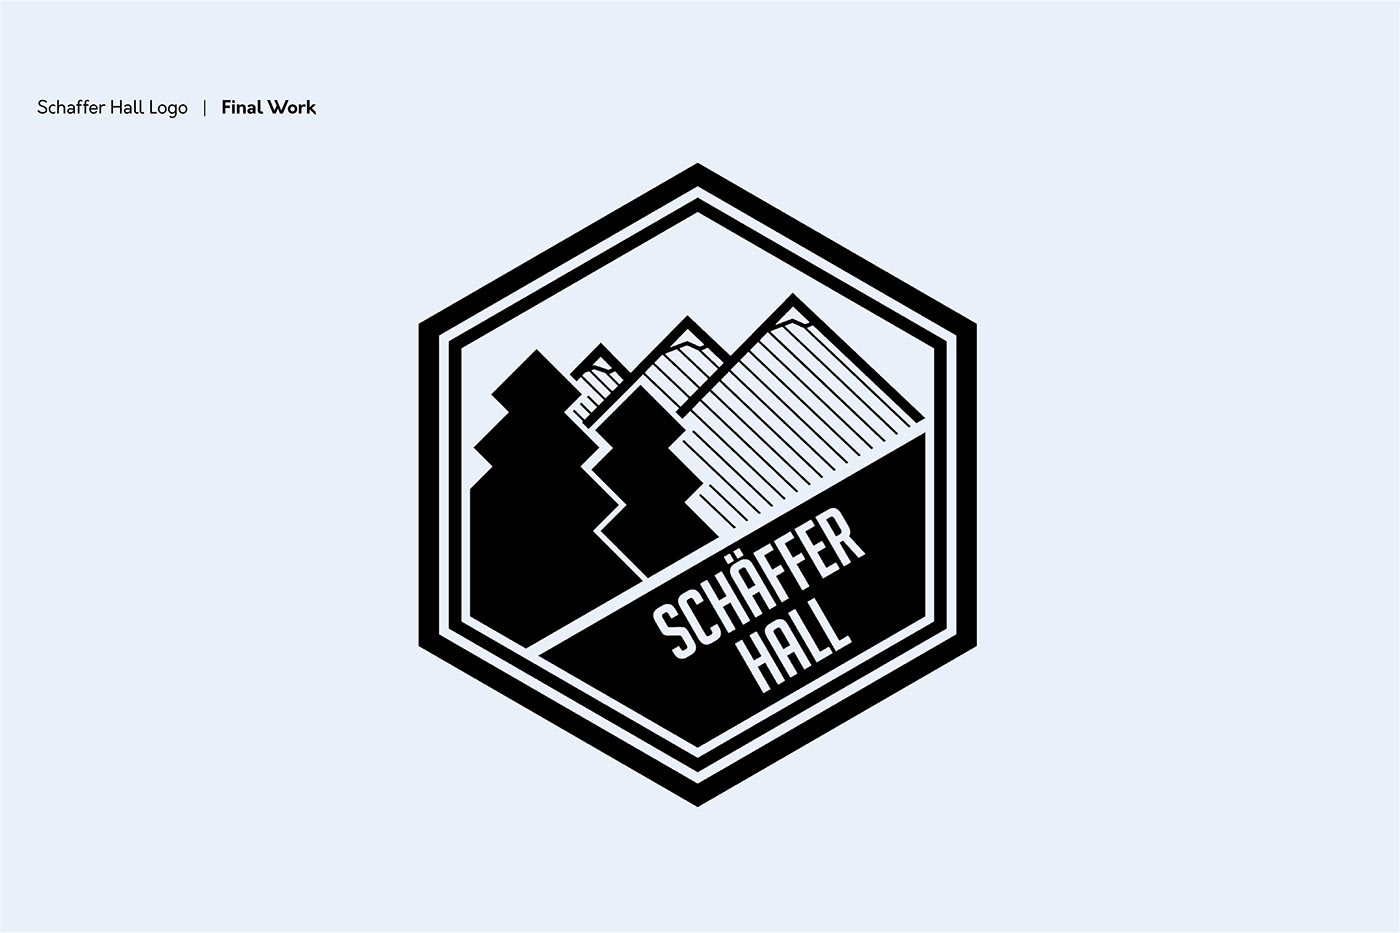 schaffer hall UofA ualberta schaffer logo lister centre Residence mary schaffer Logo Design